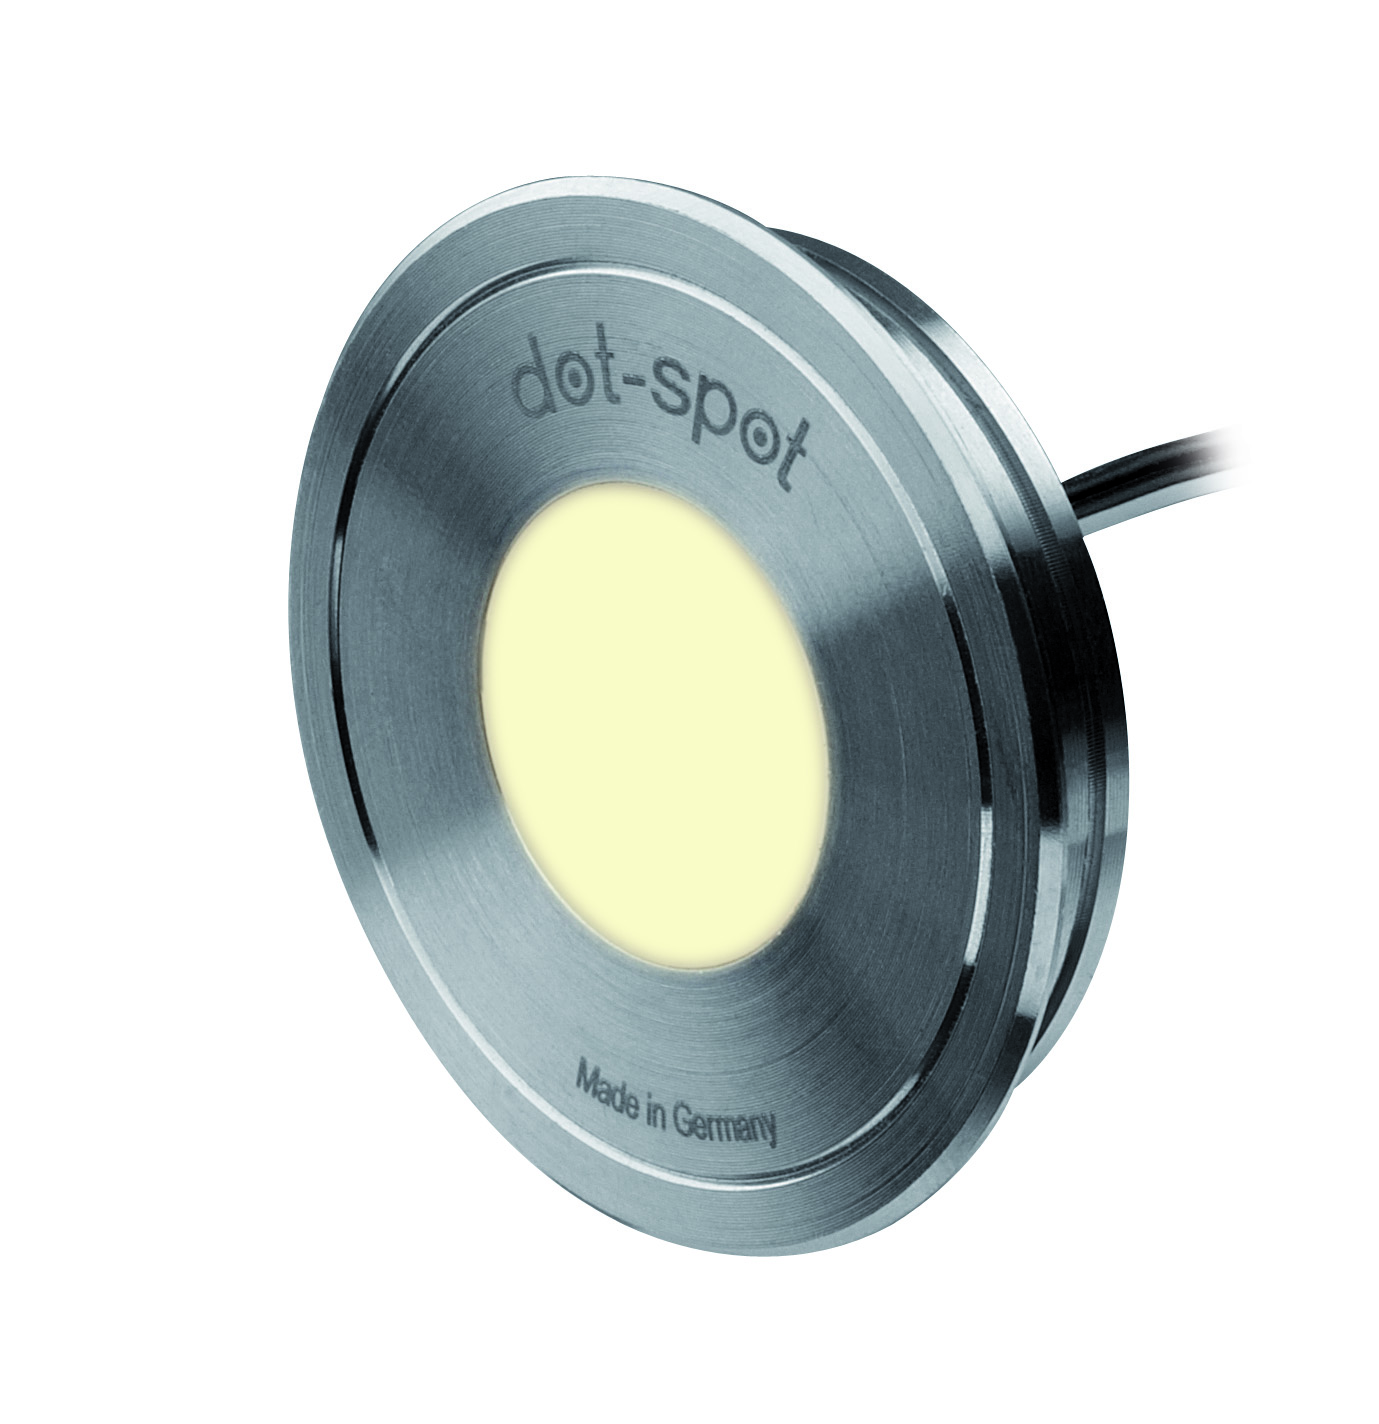 dot-spot Moderne Einbauleuchten & Einbaulampen fürs Schlafzimmer von dot-spot LED Akzentlichtpunkt Disc-Dot, rund, 20 mm 50701.827.01